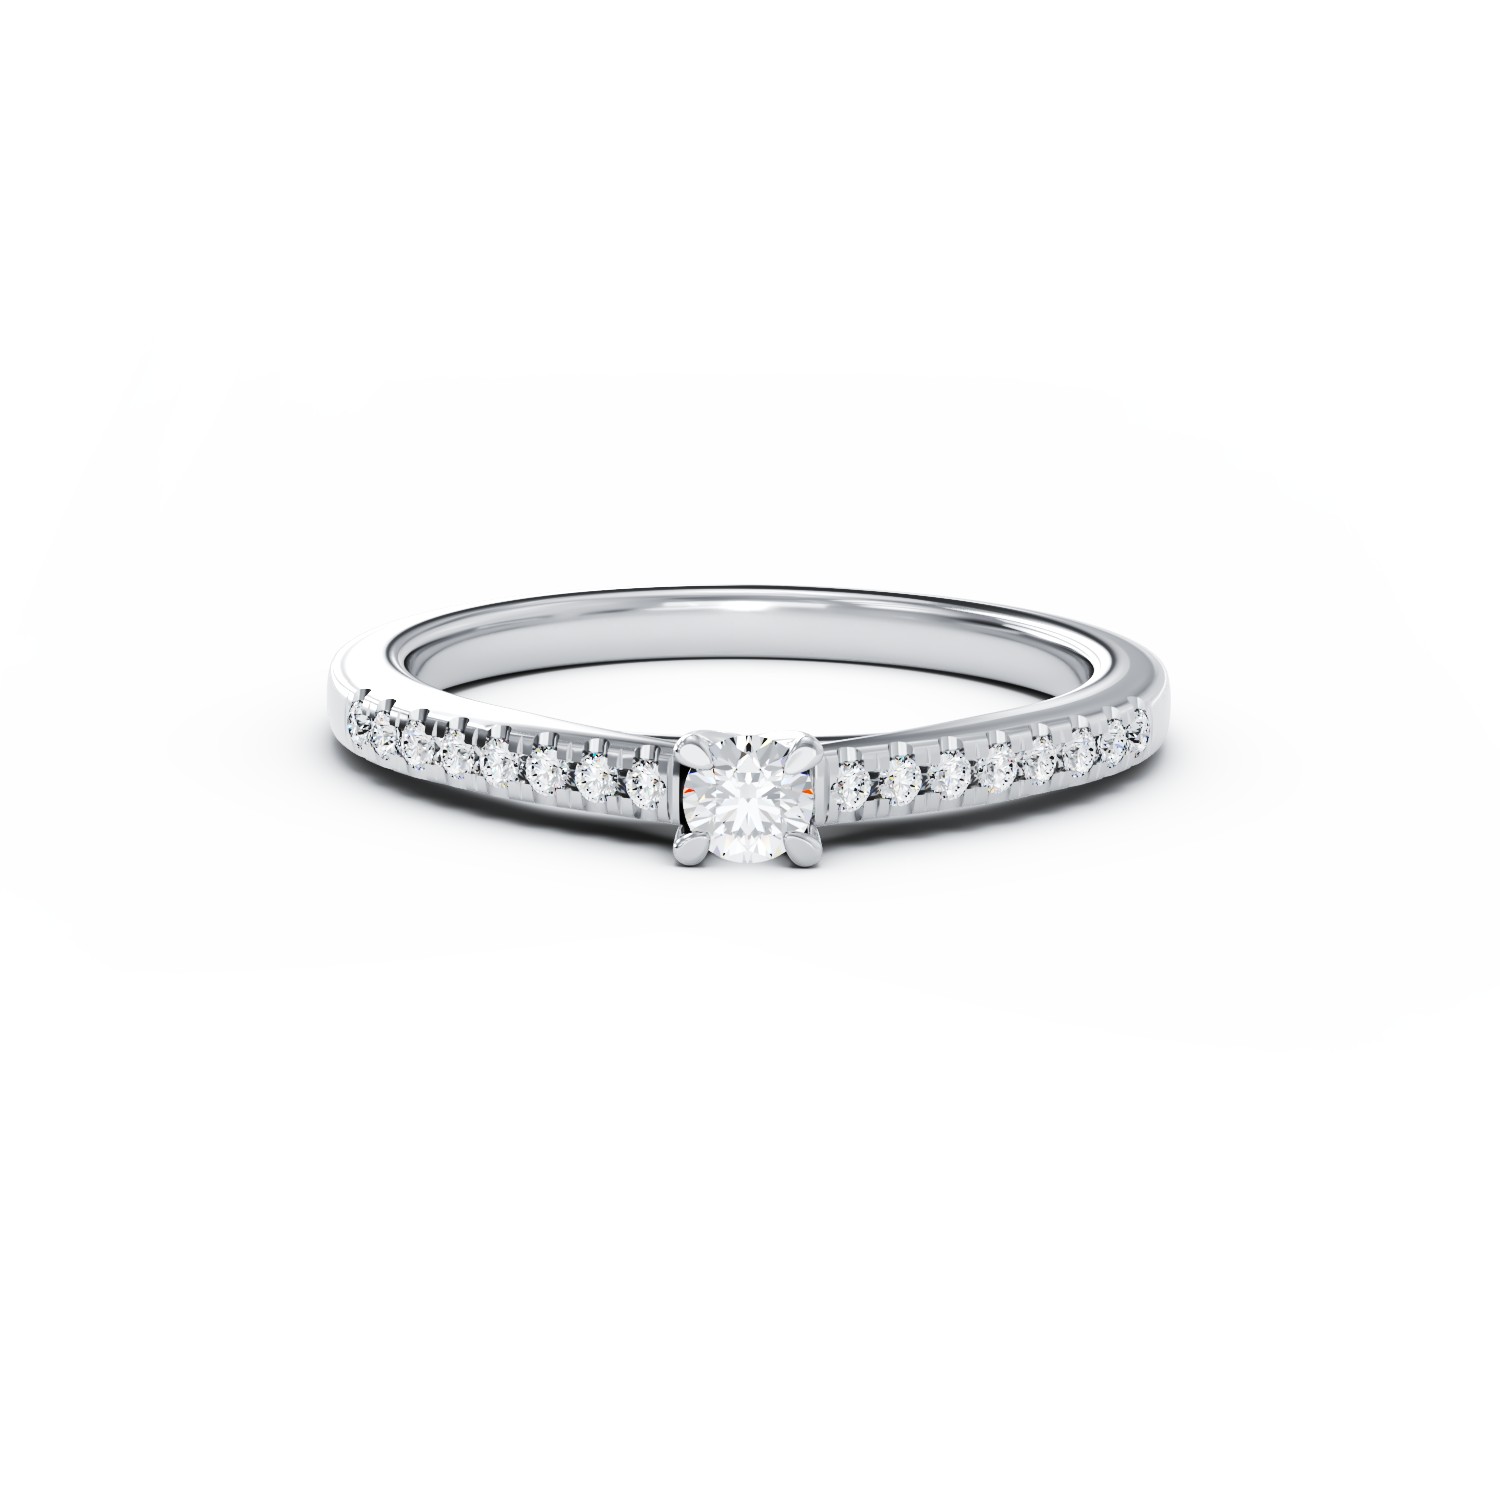 Eljegyzési gyűrű 18K-os fehér aranyból 0,2ct gyémánttal és 0,19ct gyémánttal. Gramm: 2,85